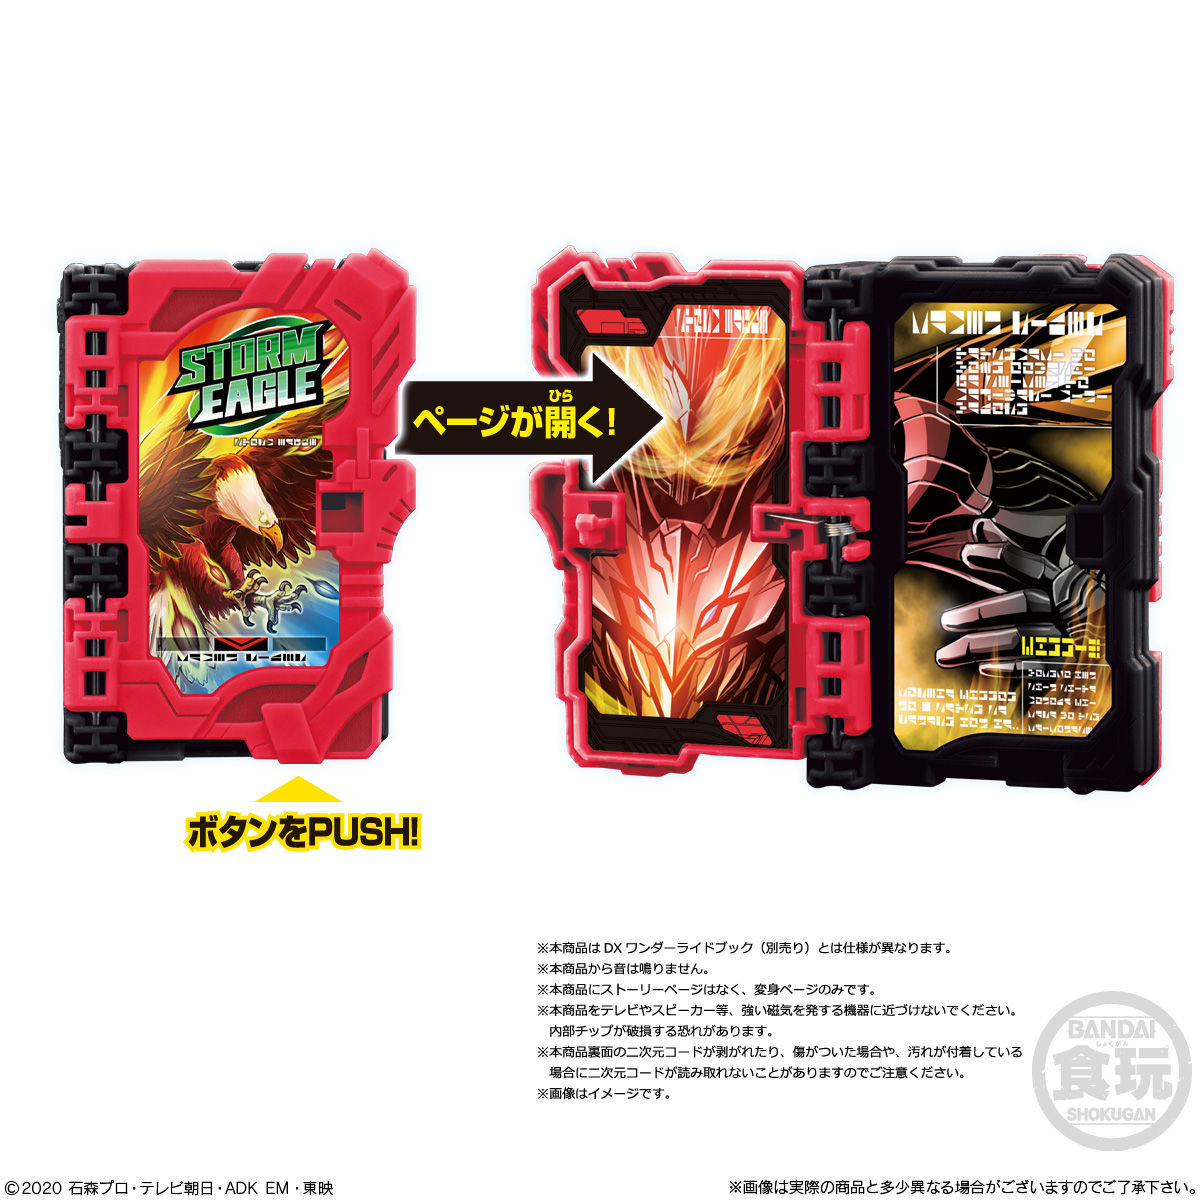 【食玩】仮面ライダーセイバー『コレクタブルワンダーライドブック SG03』8個入りBOX-008